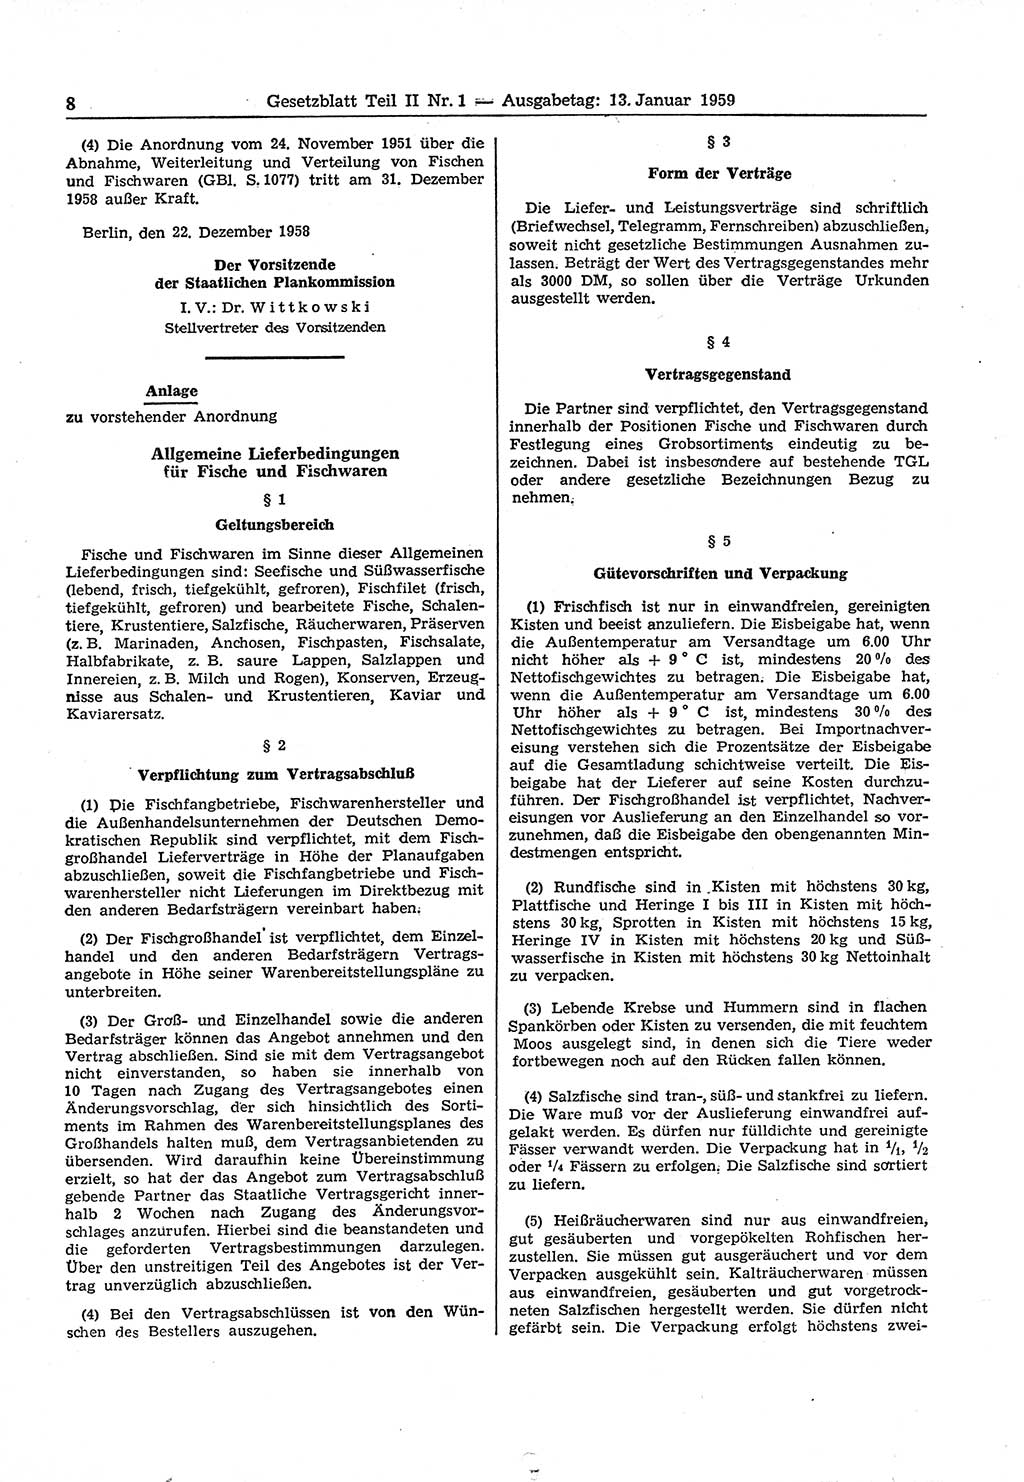 Gesetzblatt (GBl.) der Deutschen Demokratischen Republik (DDR) Teil ⅠⅠ 1959, Seite 8 (GBl. DDR ⅠⅠ 1959, S. 8)